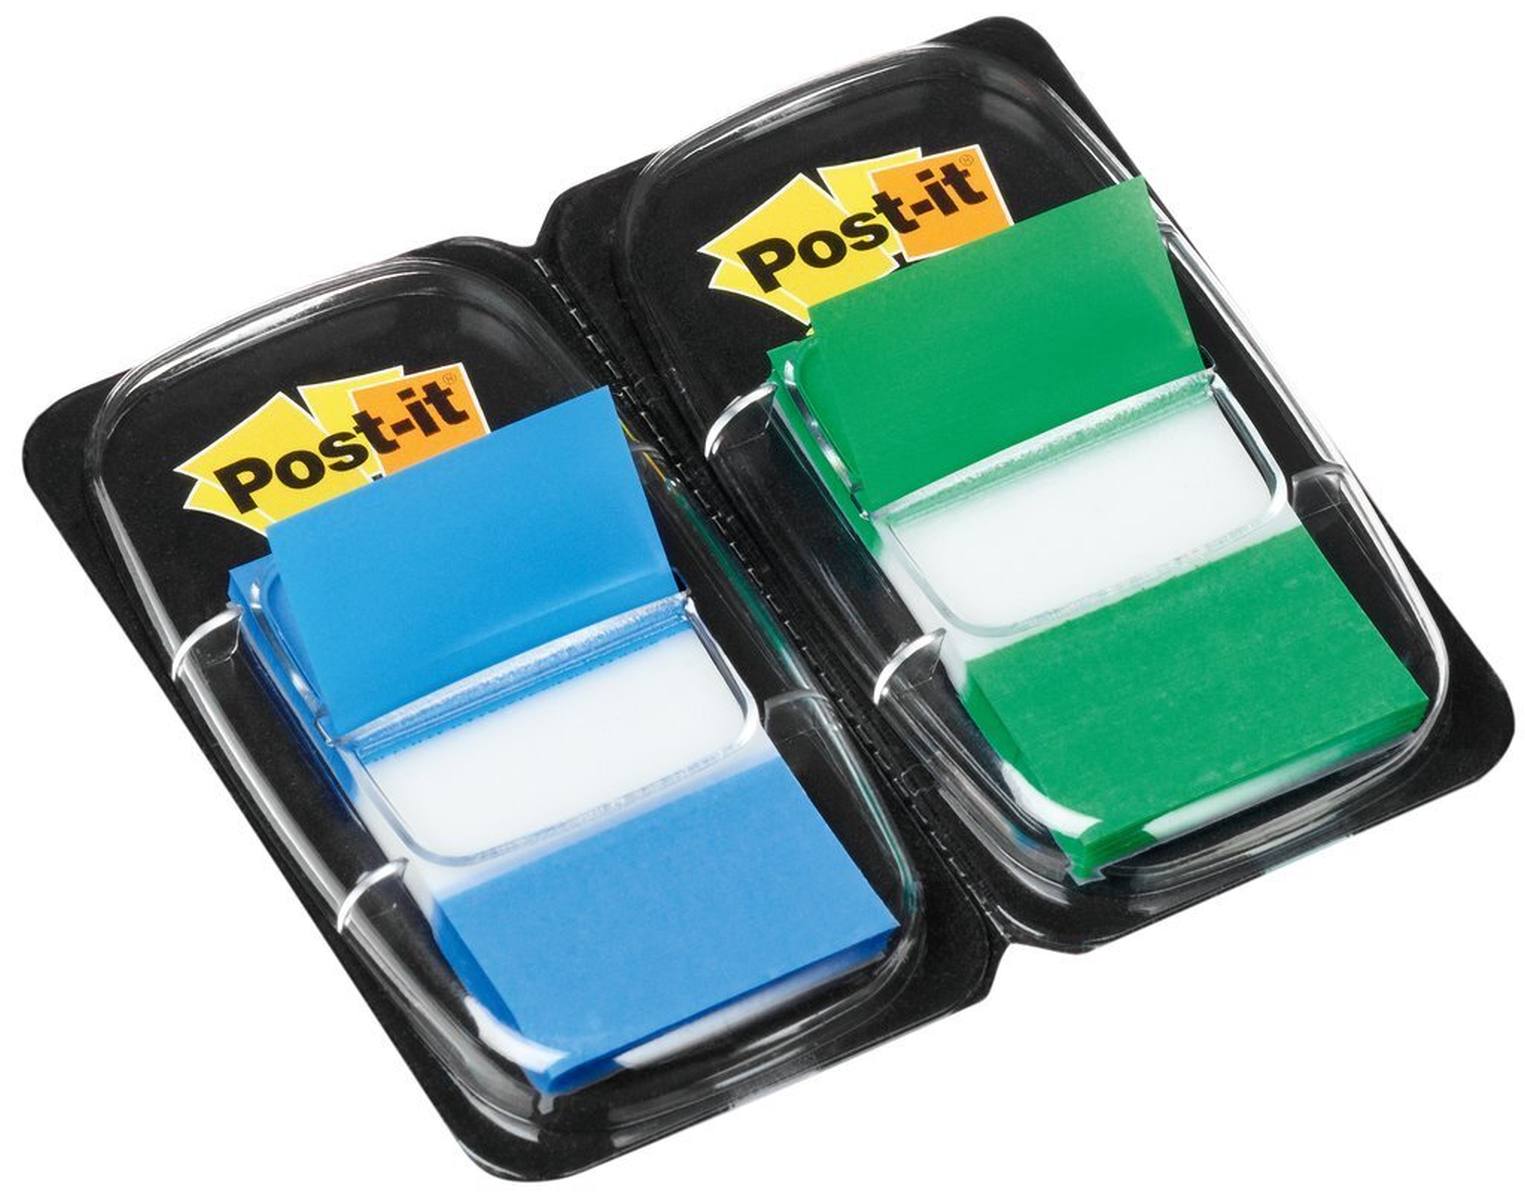 3M Post-it Index I680-GB2, 25,4 mm x 43,2 mm, blauw, groen, 2 x 50 plakstrips in dispenser